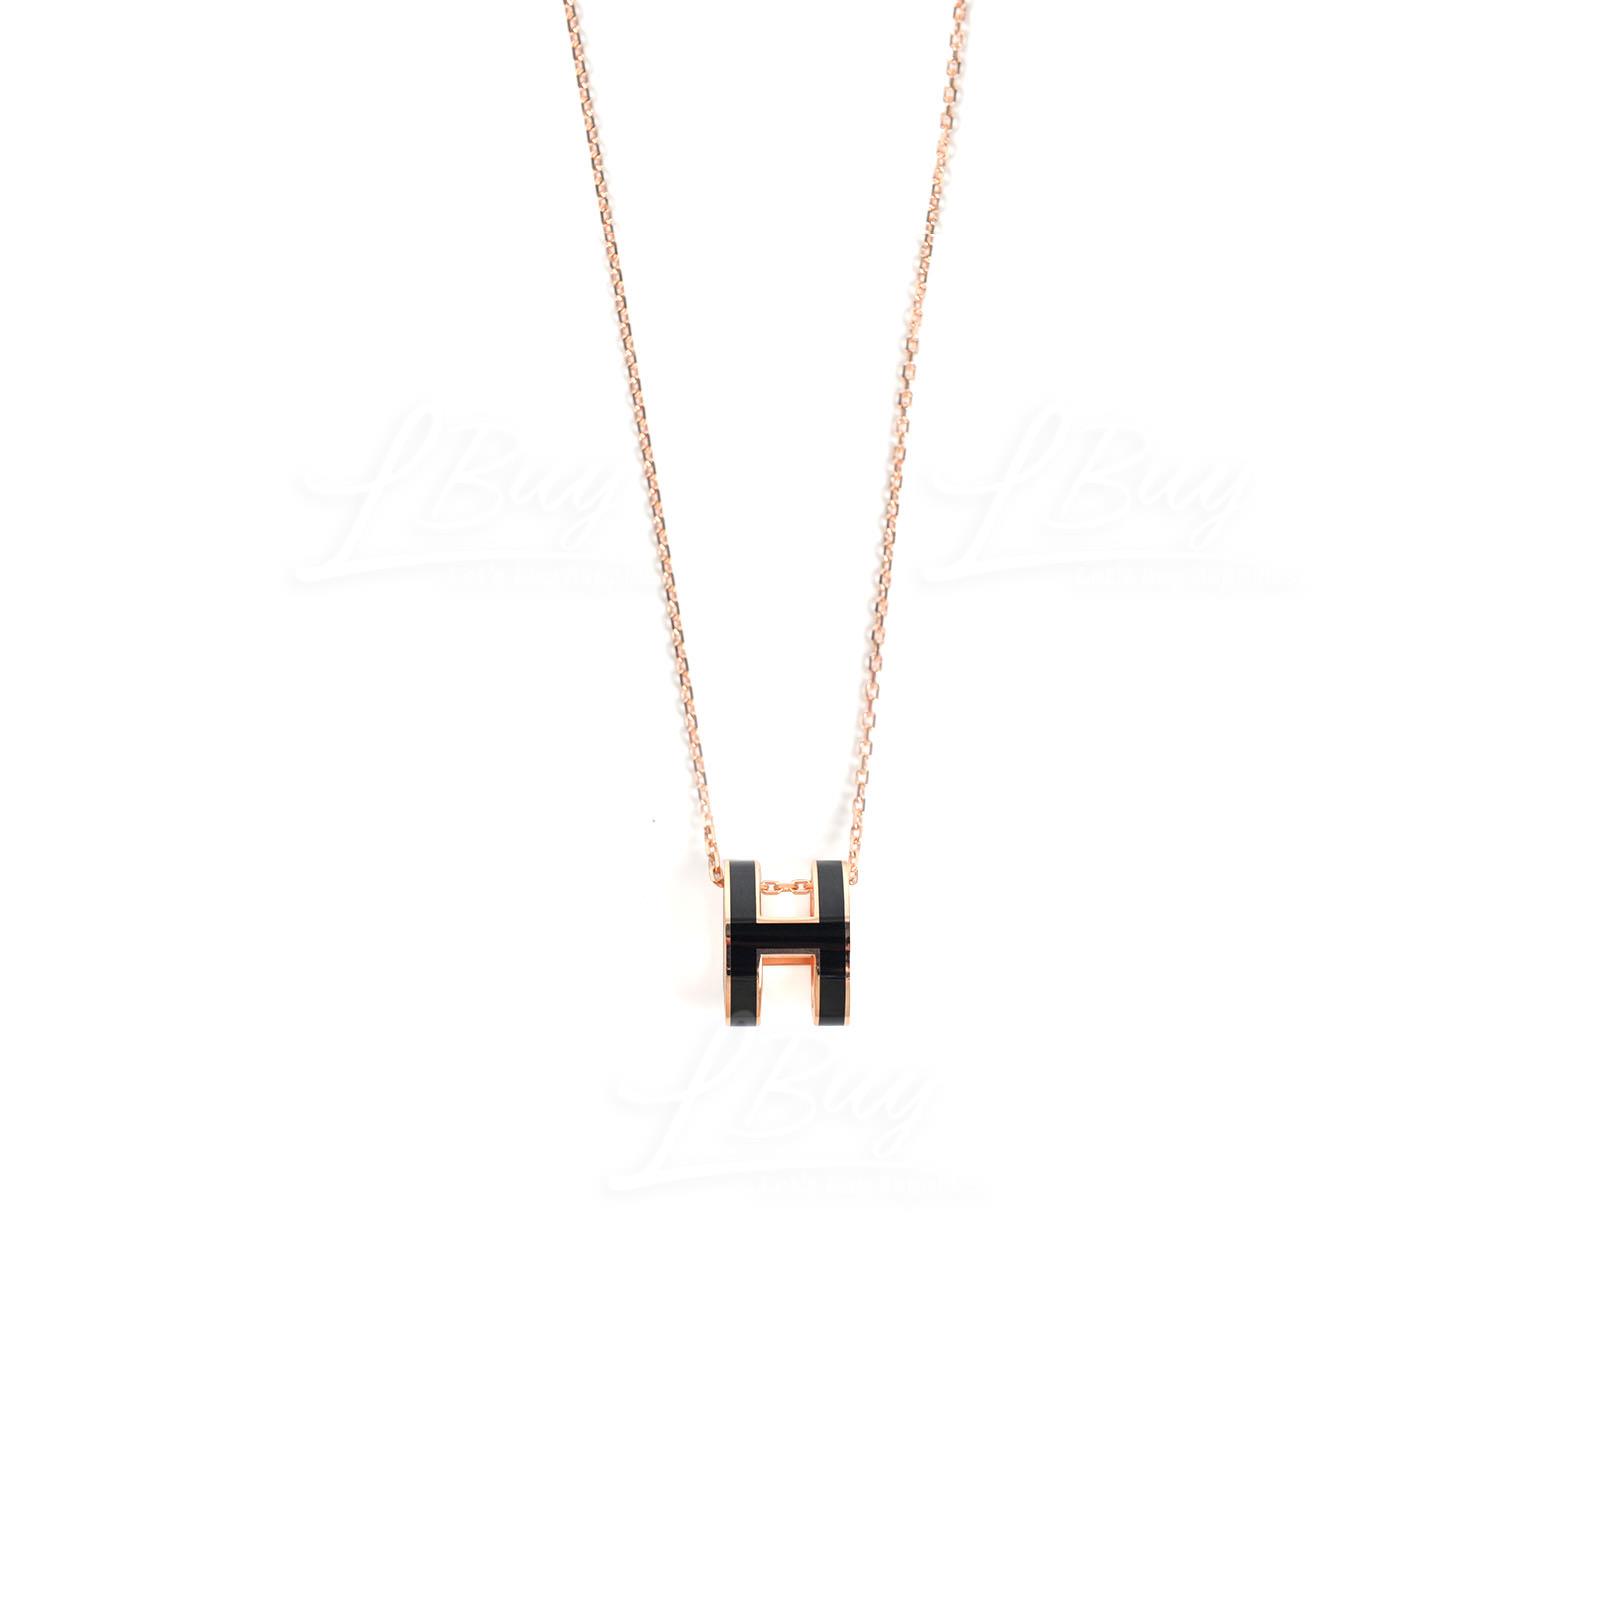 Hermes Pop H Necklace 項鍊 1C 深海藍配玫瑰鍍金